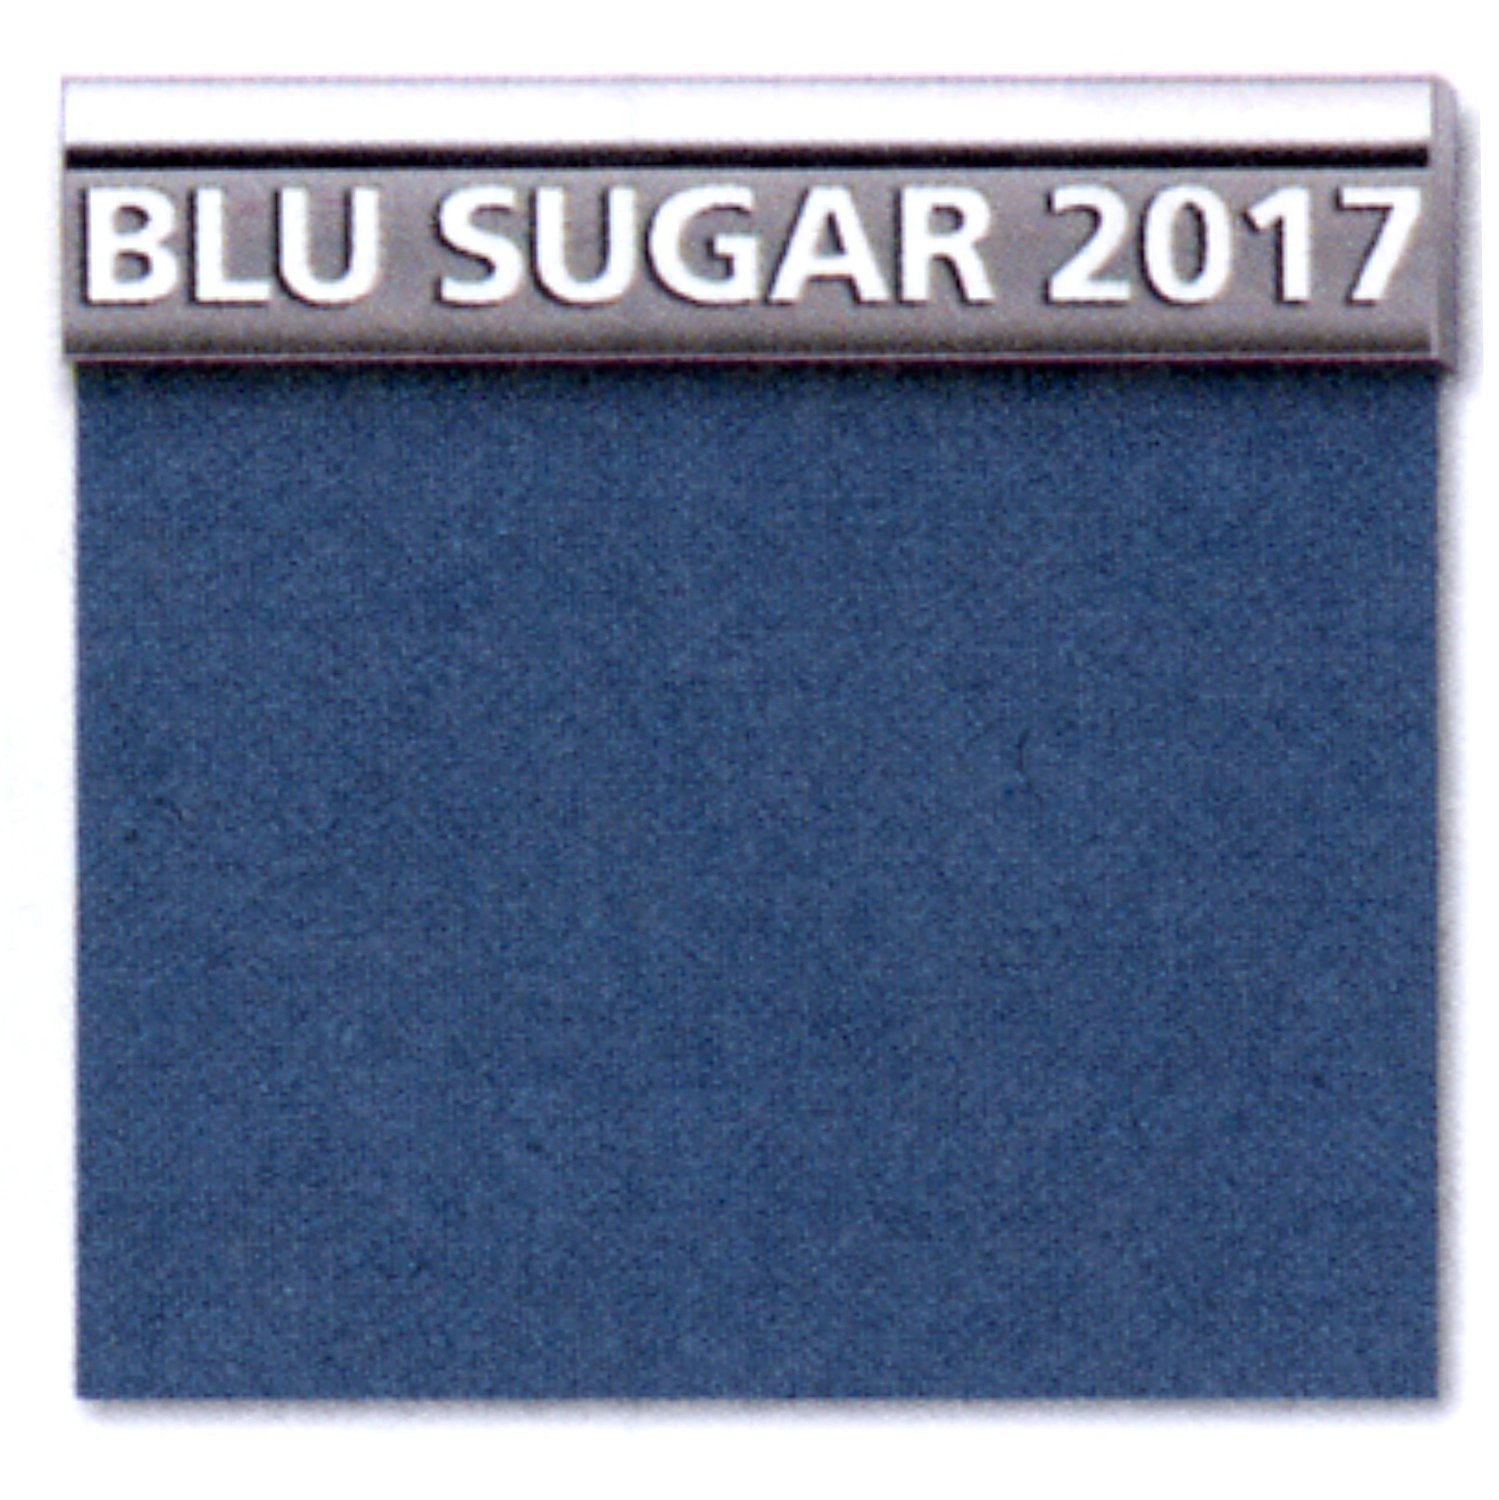 Blu sugar 2017